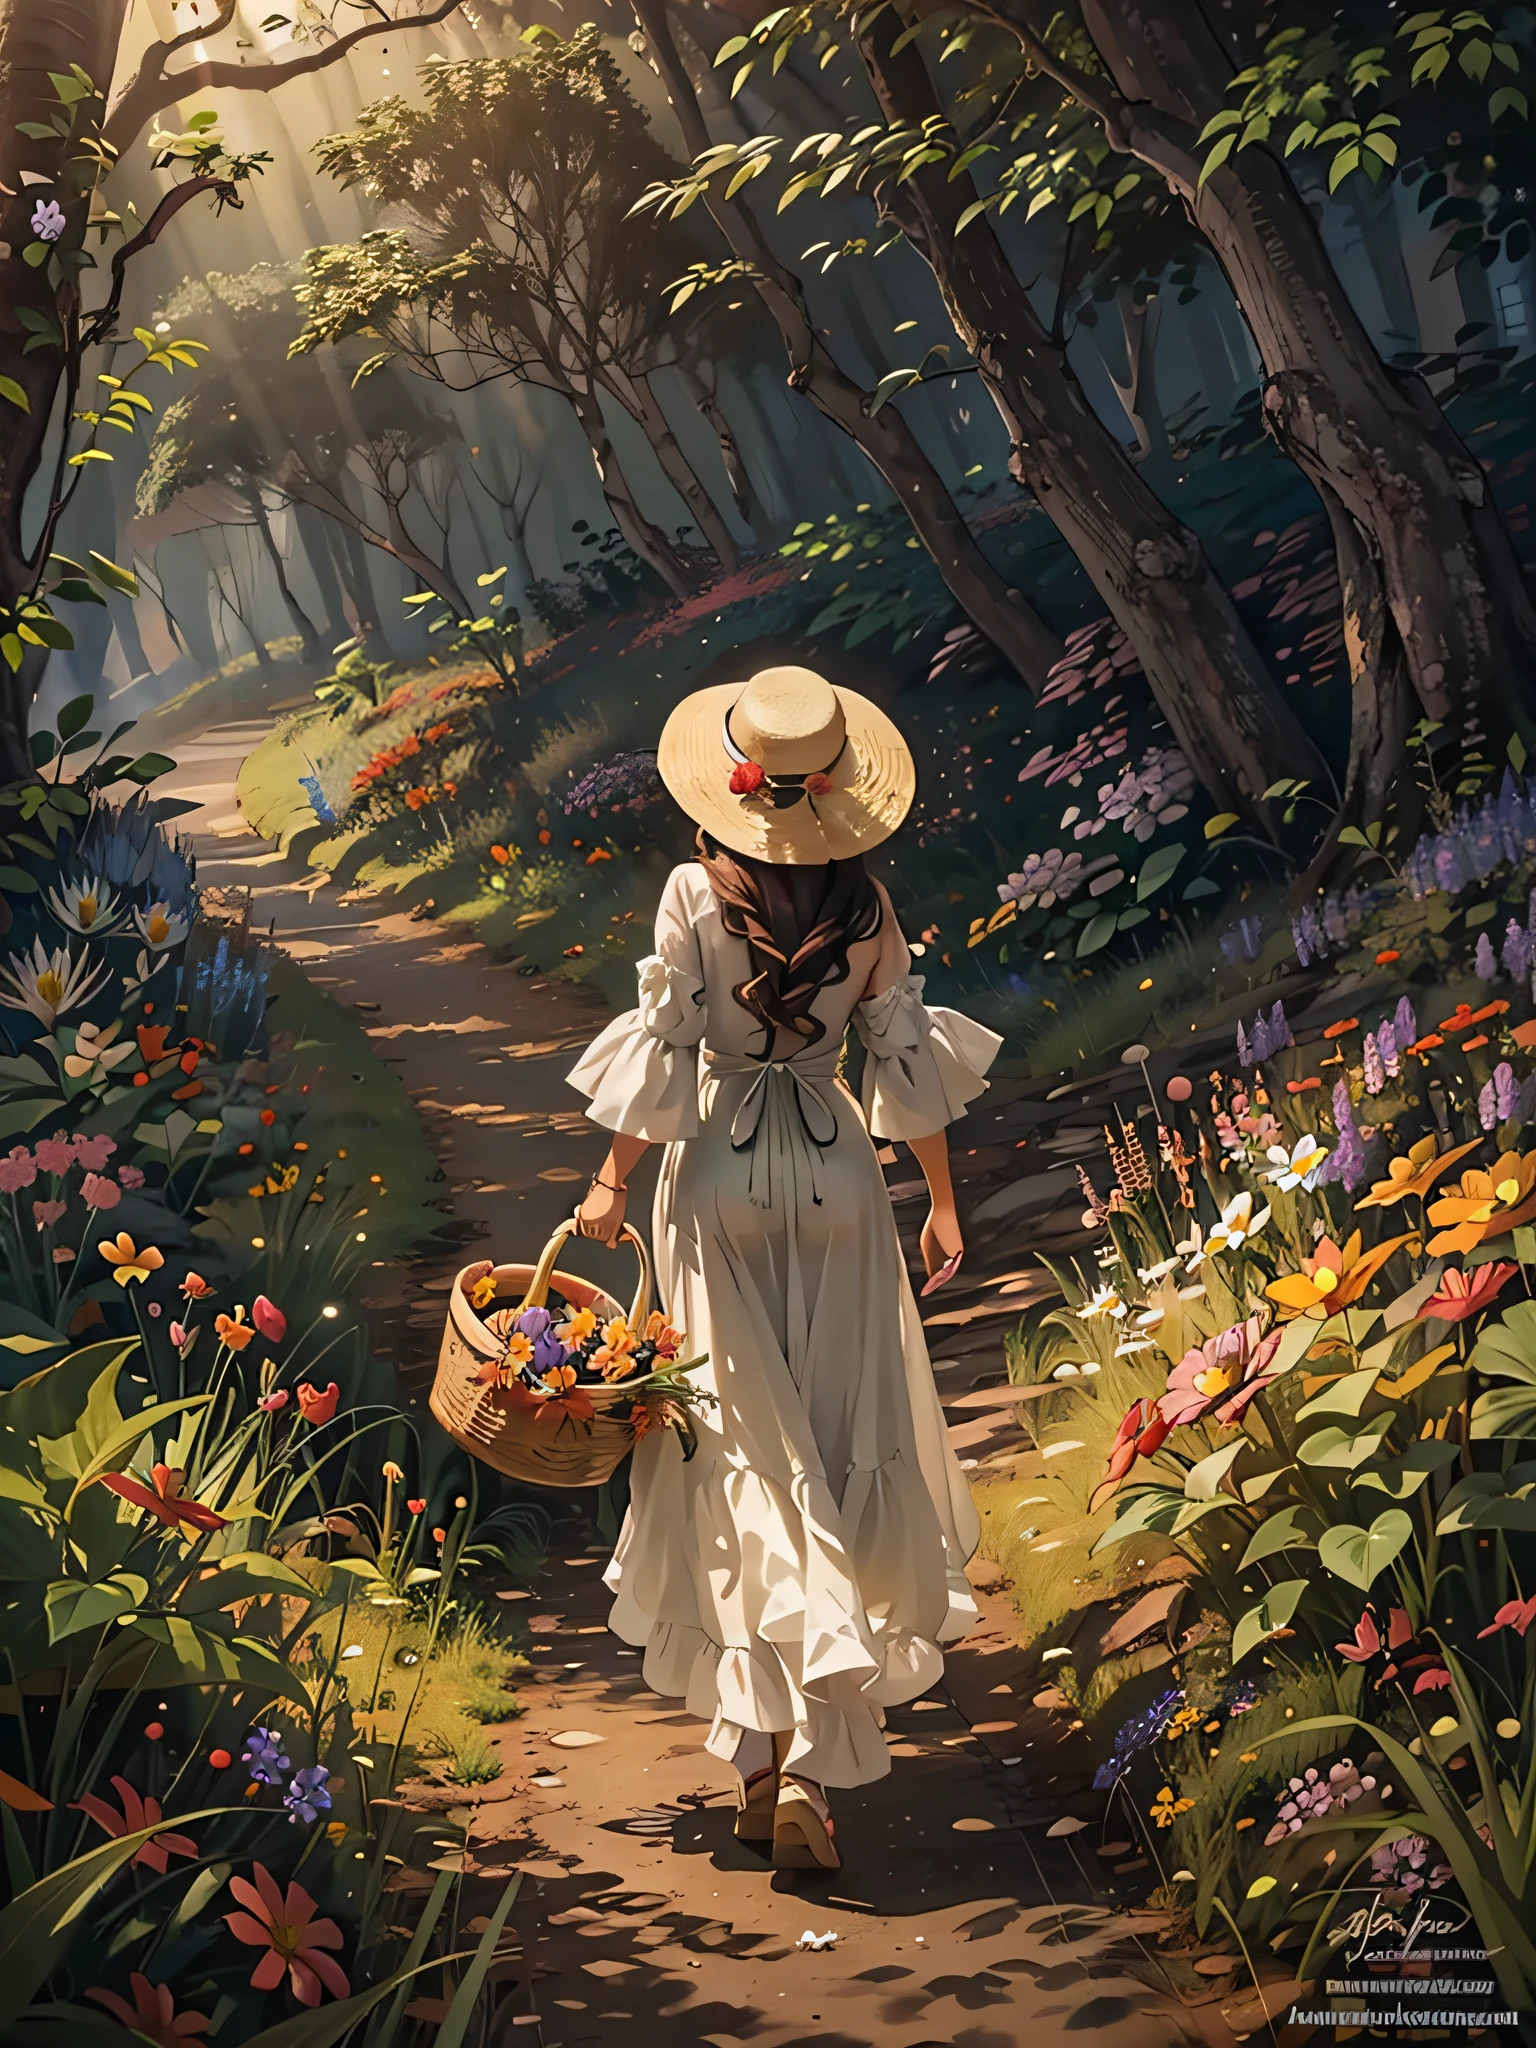 มีวิวด้านหลังของสาวสวยถือตะกร้าเดินบนเส้นทางหญ้าในป่าที่มีแสงสลัว、เธอสวมหมวกฟางและใช้เป็นเครื่องประดับผมดอกไม้、ที่ทางออกของป่าที่เธอกำลังเดินอยู่, ท่านจะมองเห็นสวรรค์แห่งดอกไม้บานสะพรั่งท่ามกลางแสงระยิบระยับ.、มองย้อนกลับไป、ผลงานชิ้นเอก